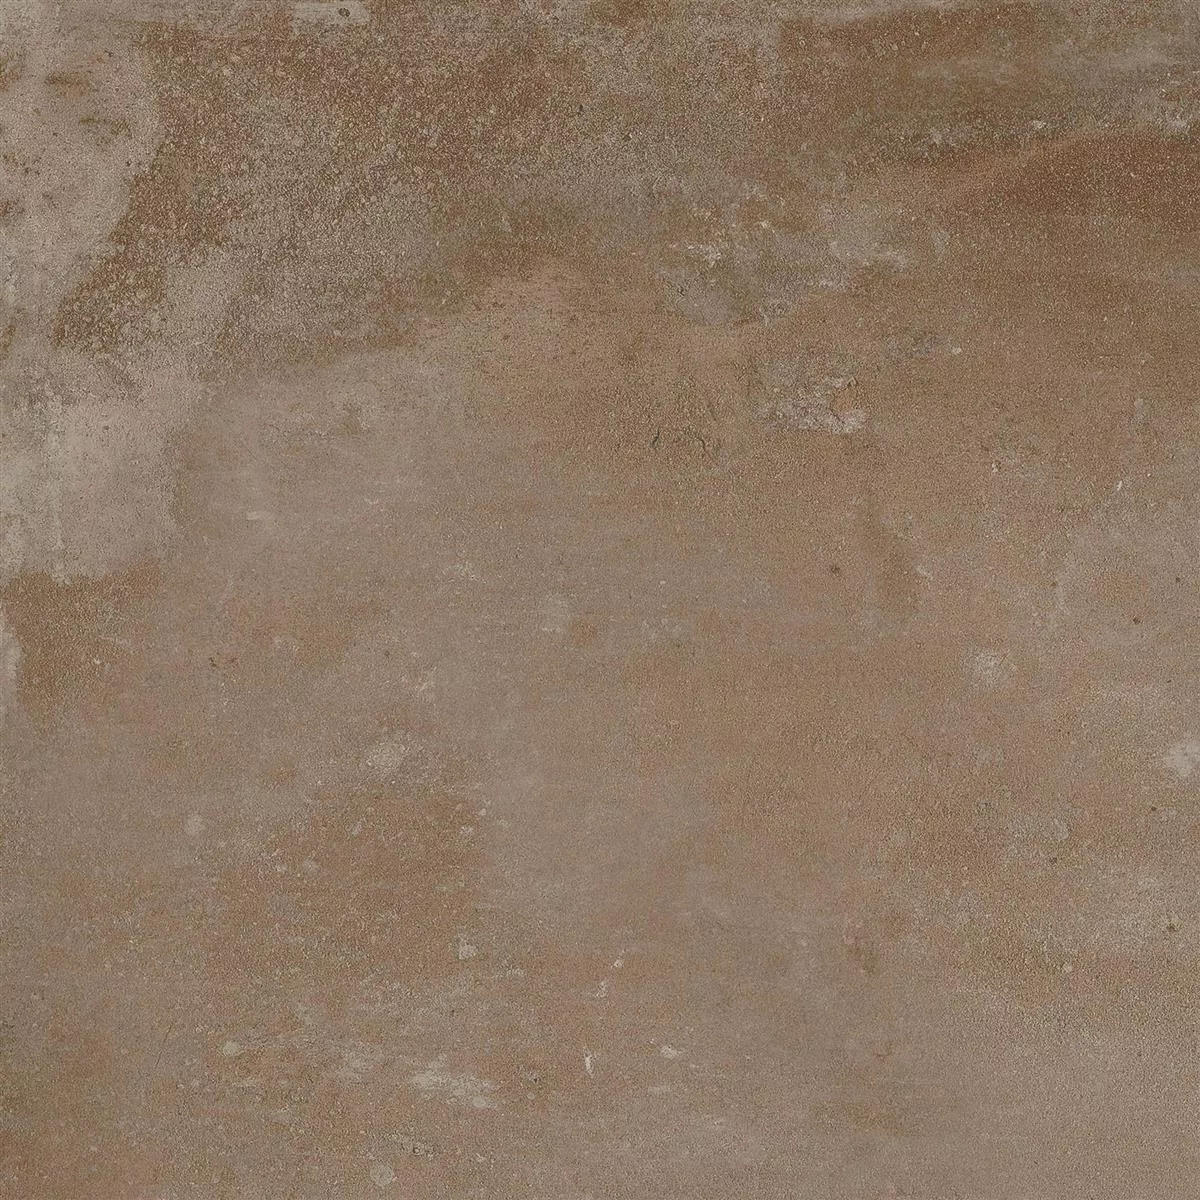 Podlahová Dlaždice Cementový Vzhled Maryland Hnědá 60x60cm